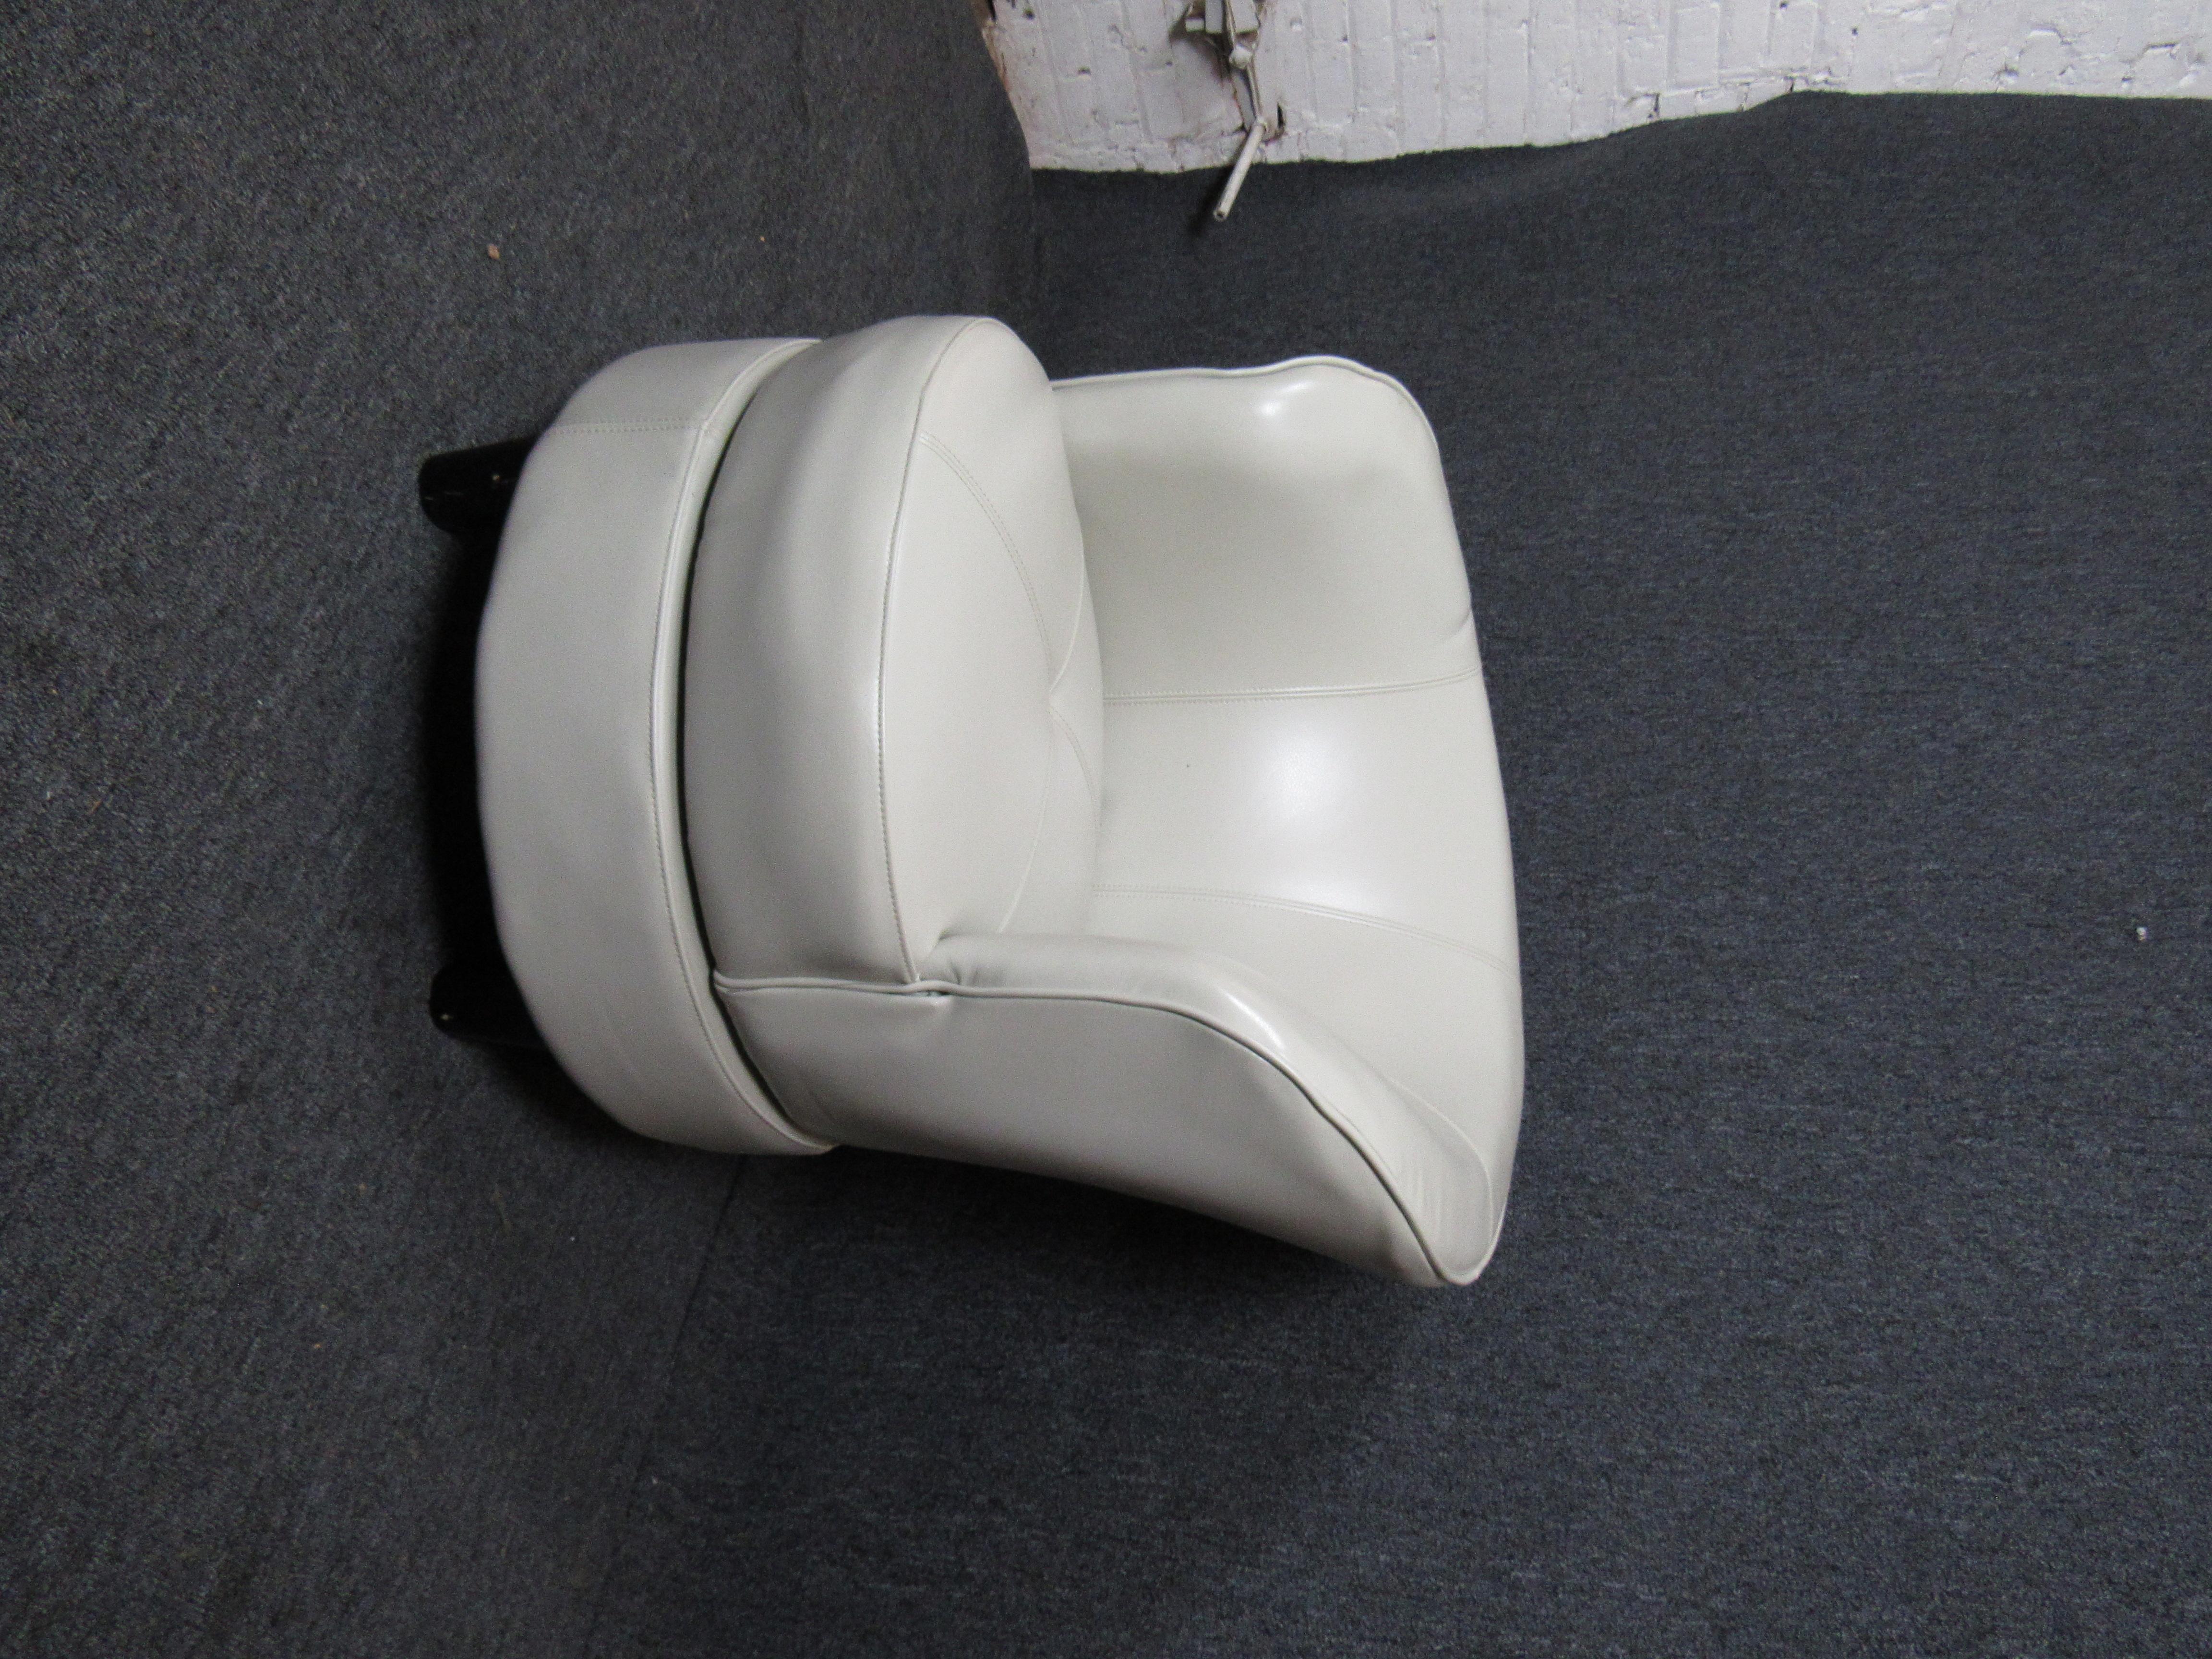 Magnifique chaise pivotante moderne recouverte de tissu vinyle blanc, cette chaise ferait un excellent ajout à n'importe quelle maison ou bureau.

(Veuillez confirmer l'emplacement de l'article - NY ou NJ - avec le concessionnaire)